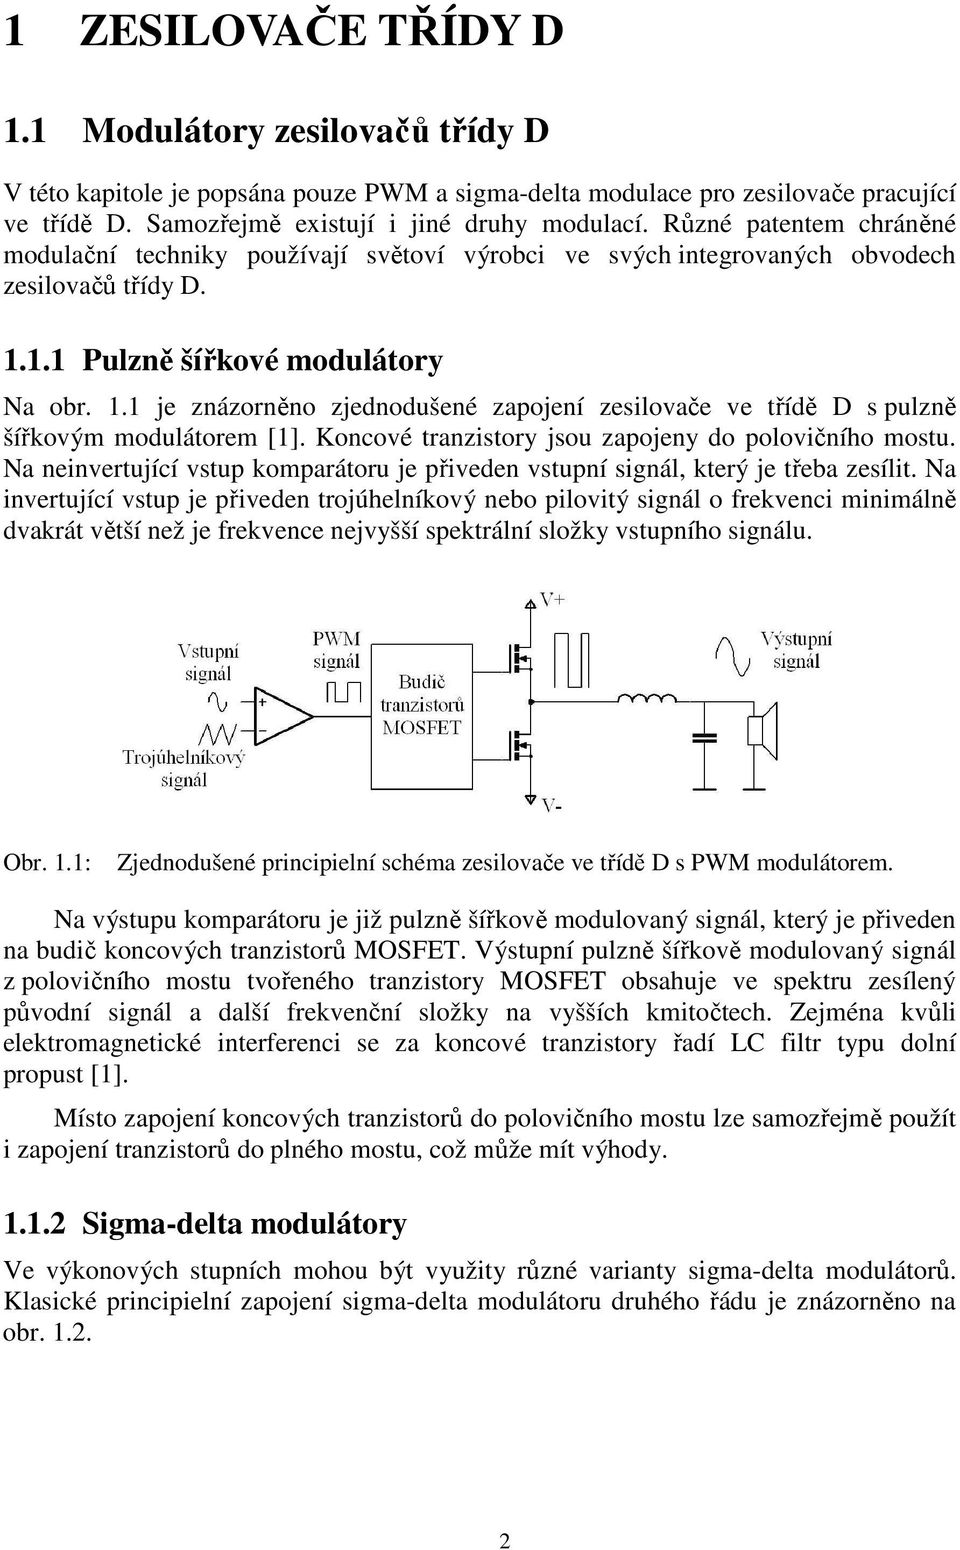 1.1 Pulzně šířkové modulátory Na obr. 1.1 je znázorněno zjednodušené zapojení zesilovače ve třídě D s pulzně šířkovým modulátorem [1]. Koncové tranzistory jsou zapojeny do polovičního mostu.